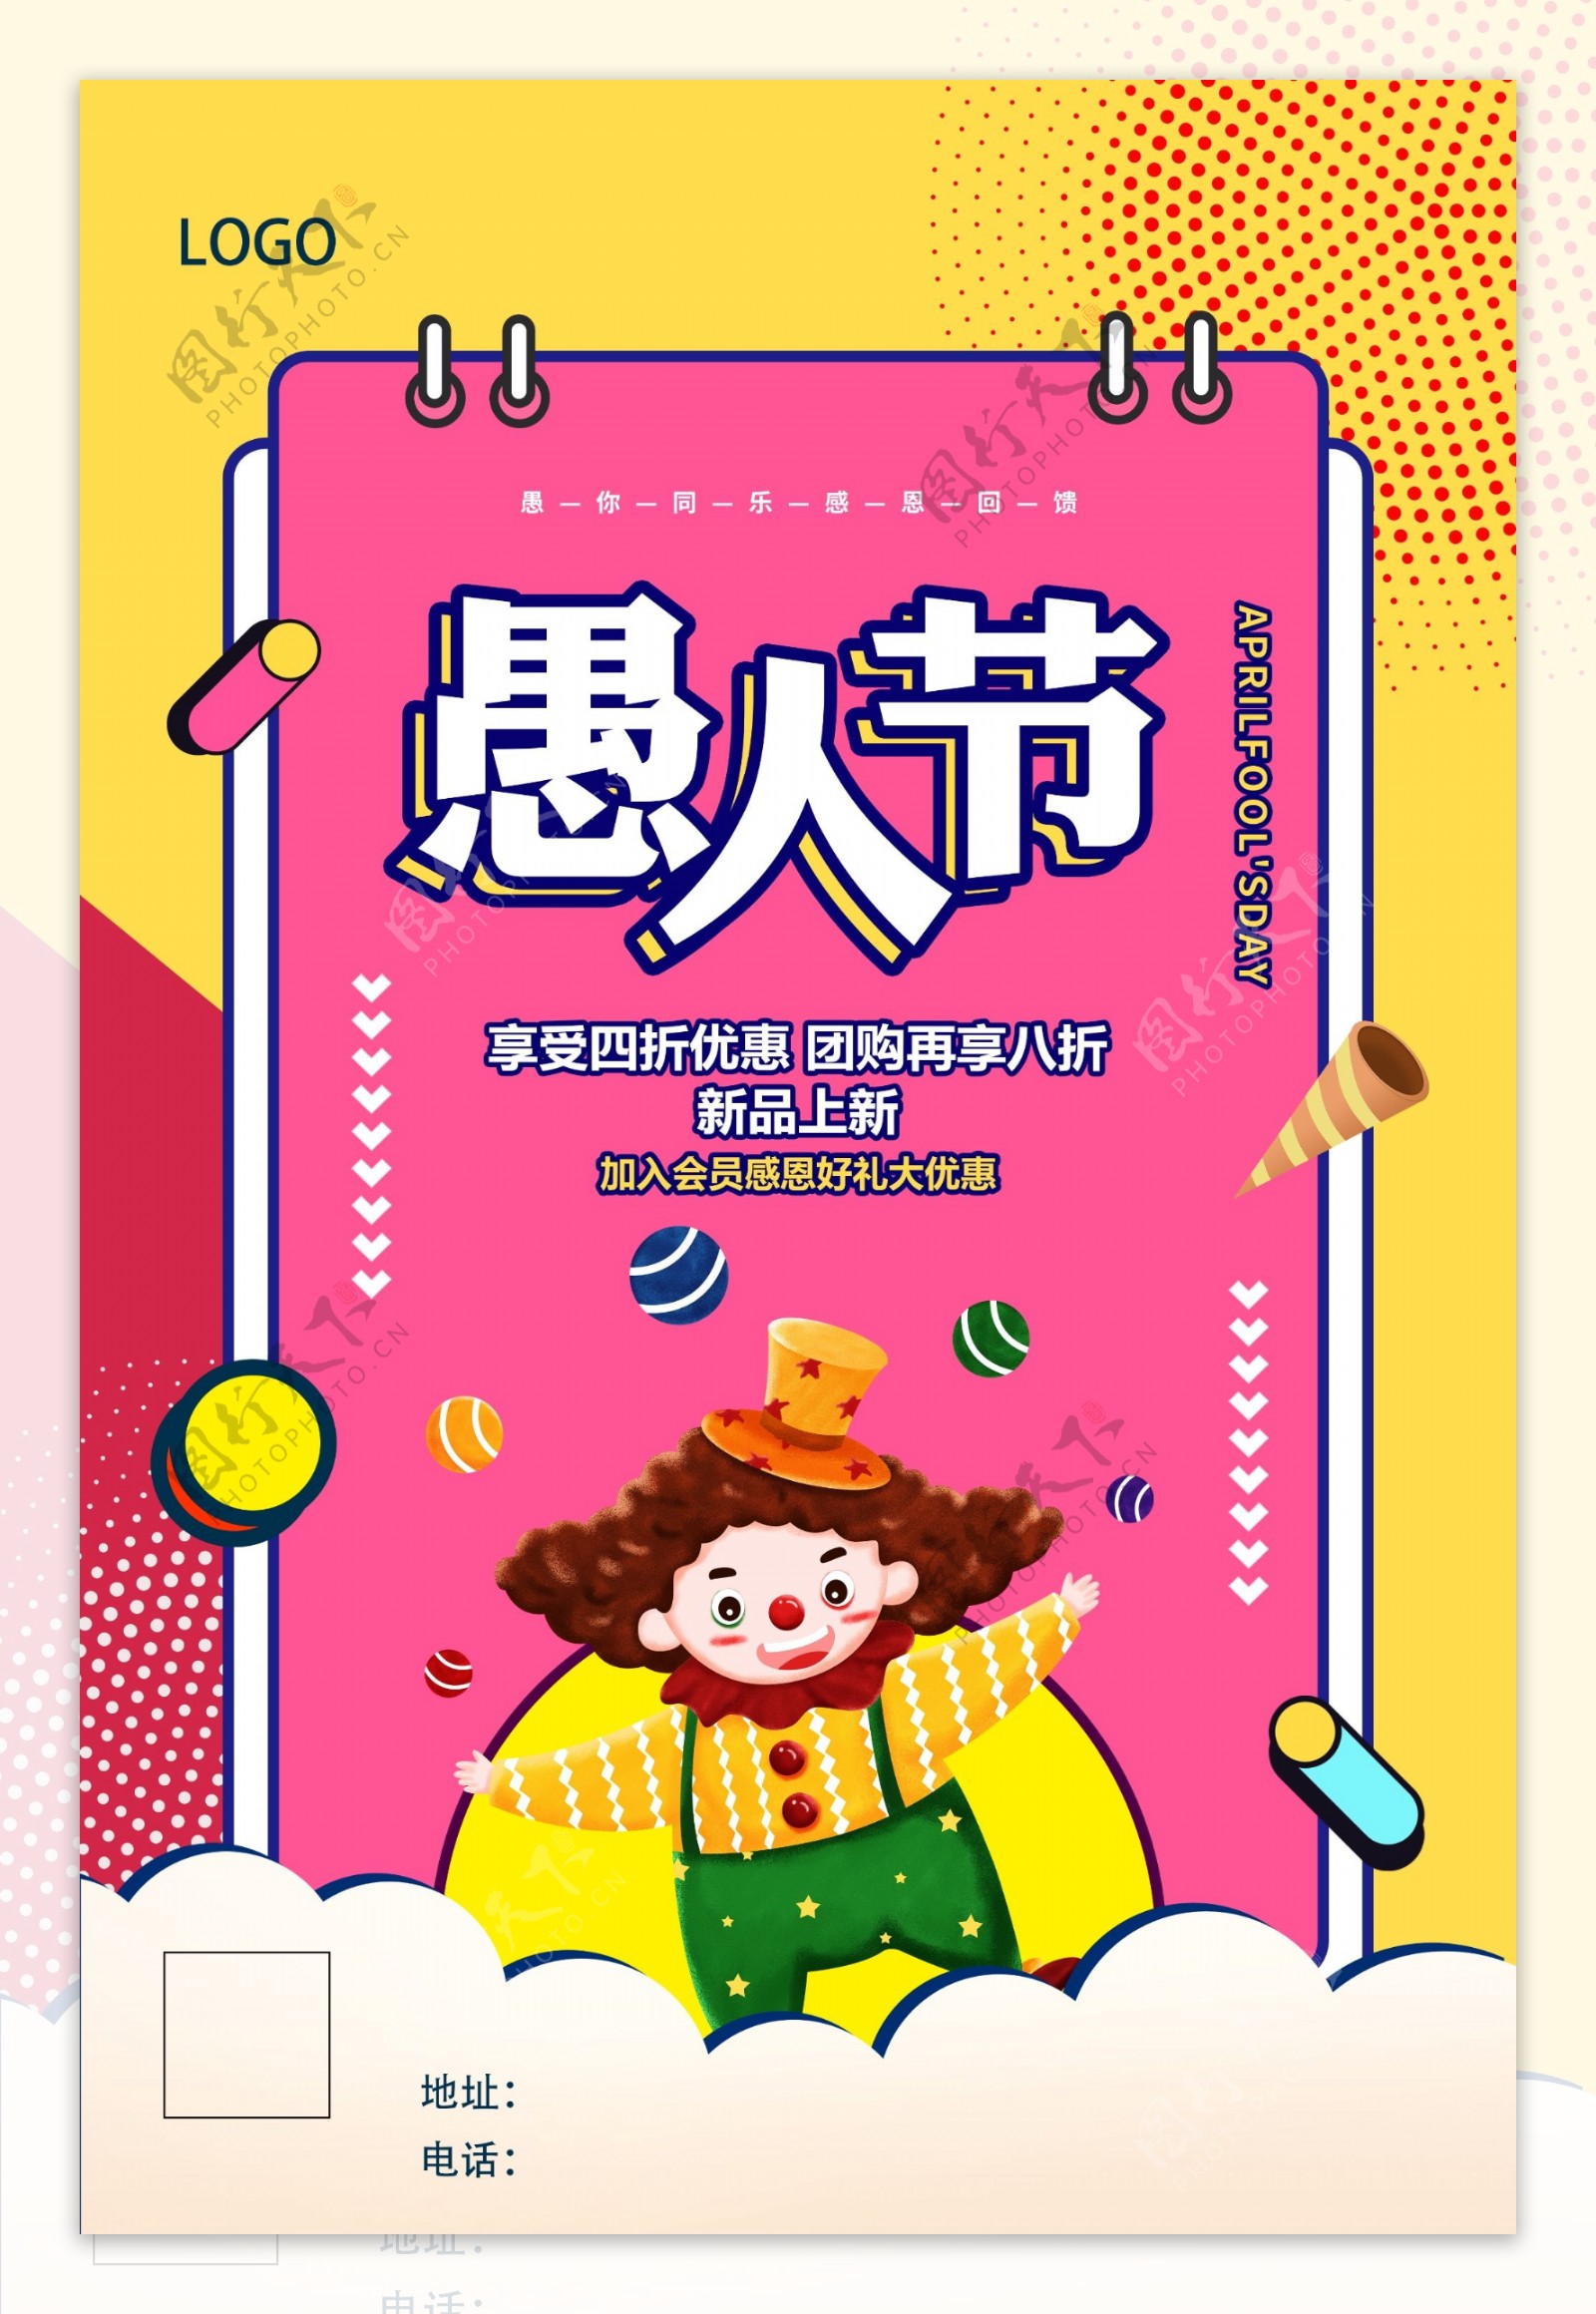 4月1日愚人节促销宣传海报设计